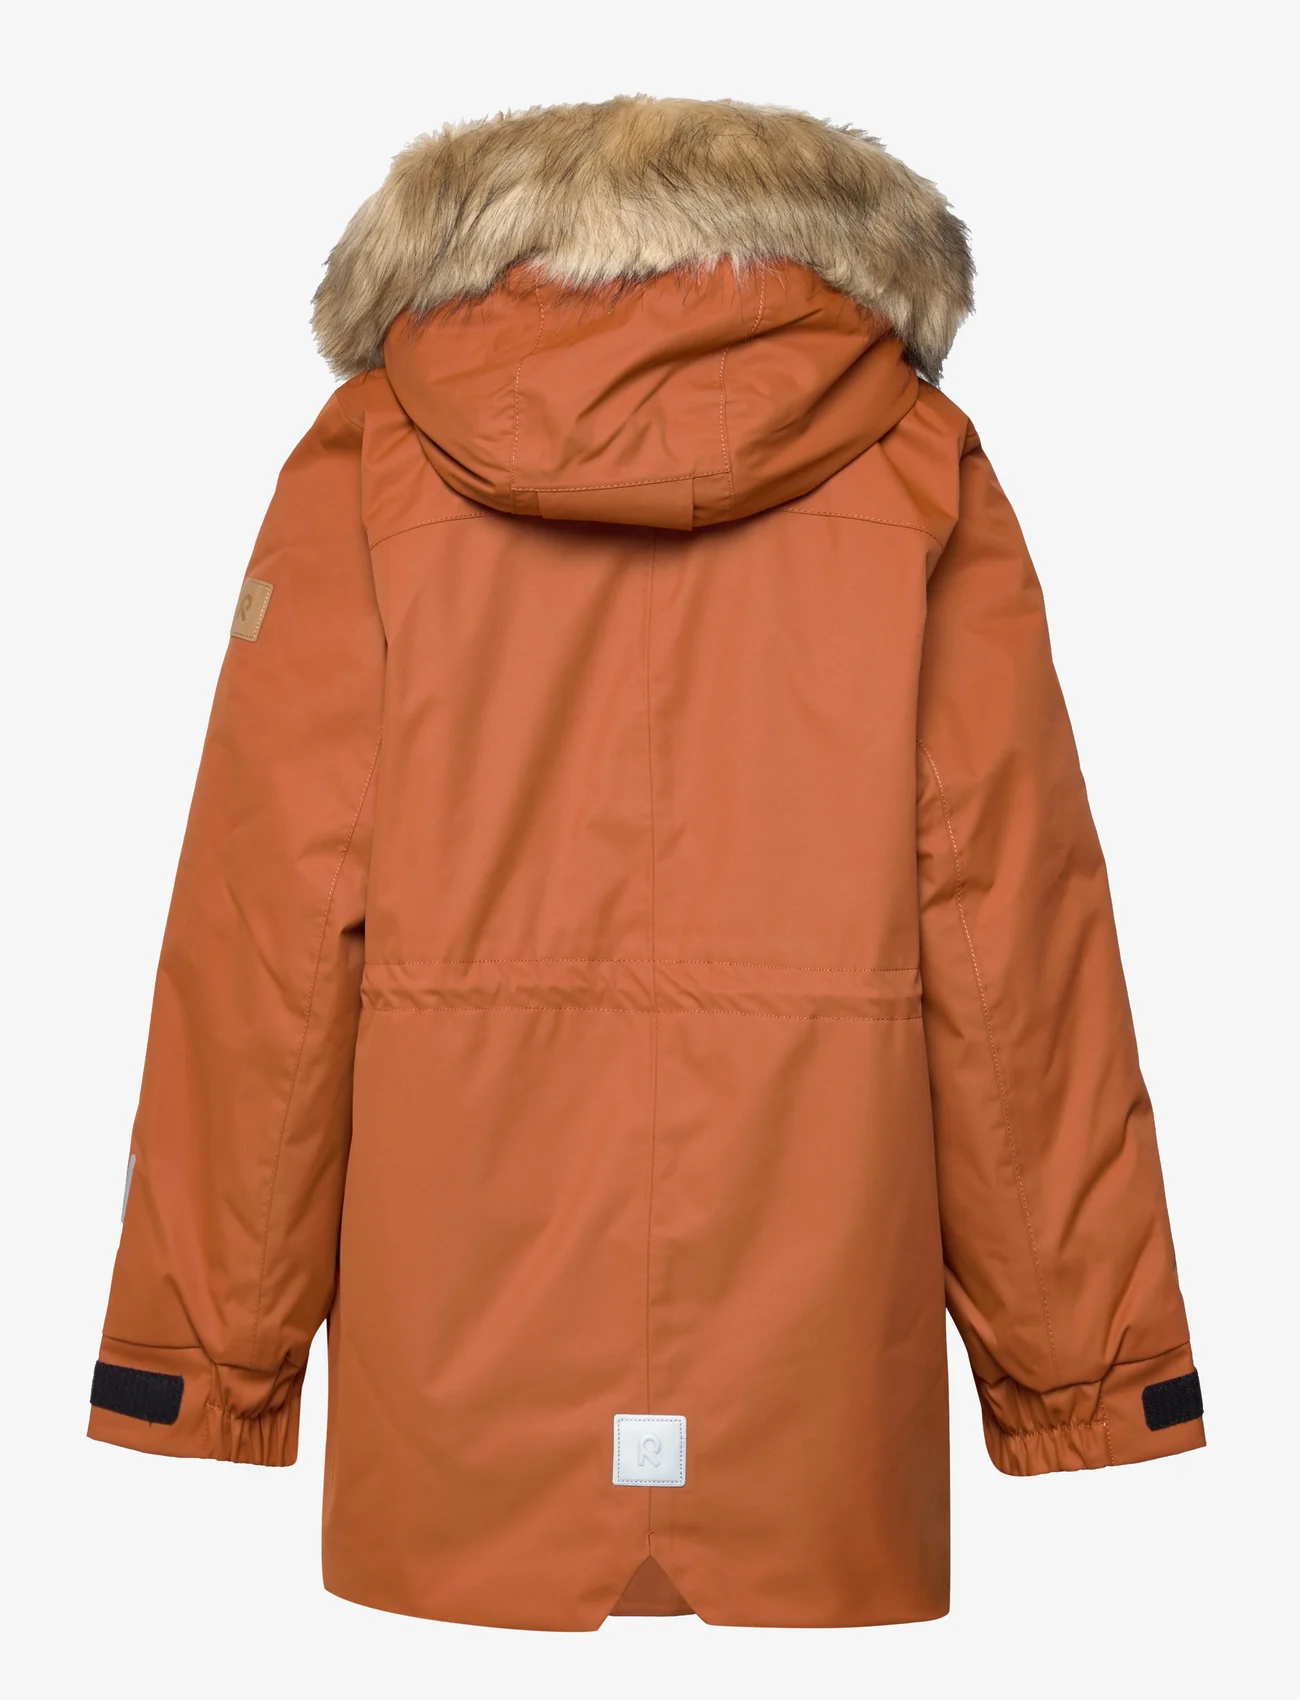 Reima - Reimatec winter jacket, Naapuri - geïsoleerde jassen - cinnamon brown - 1